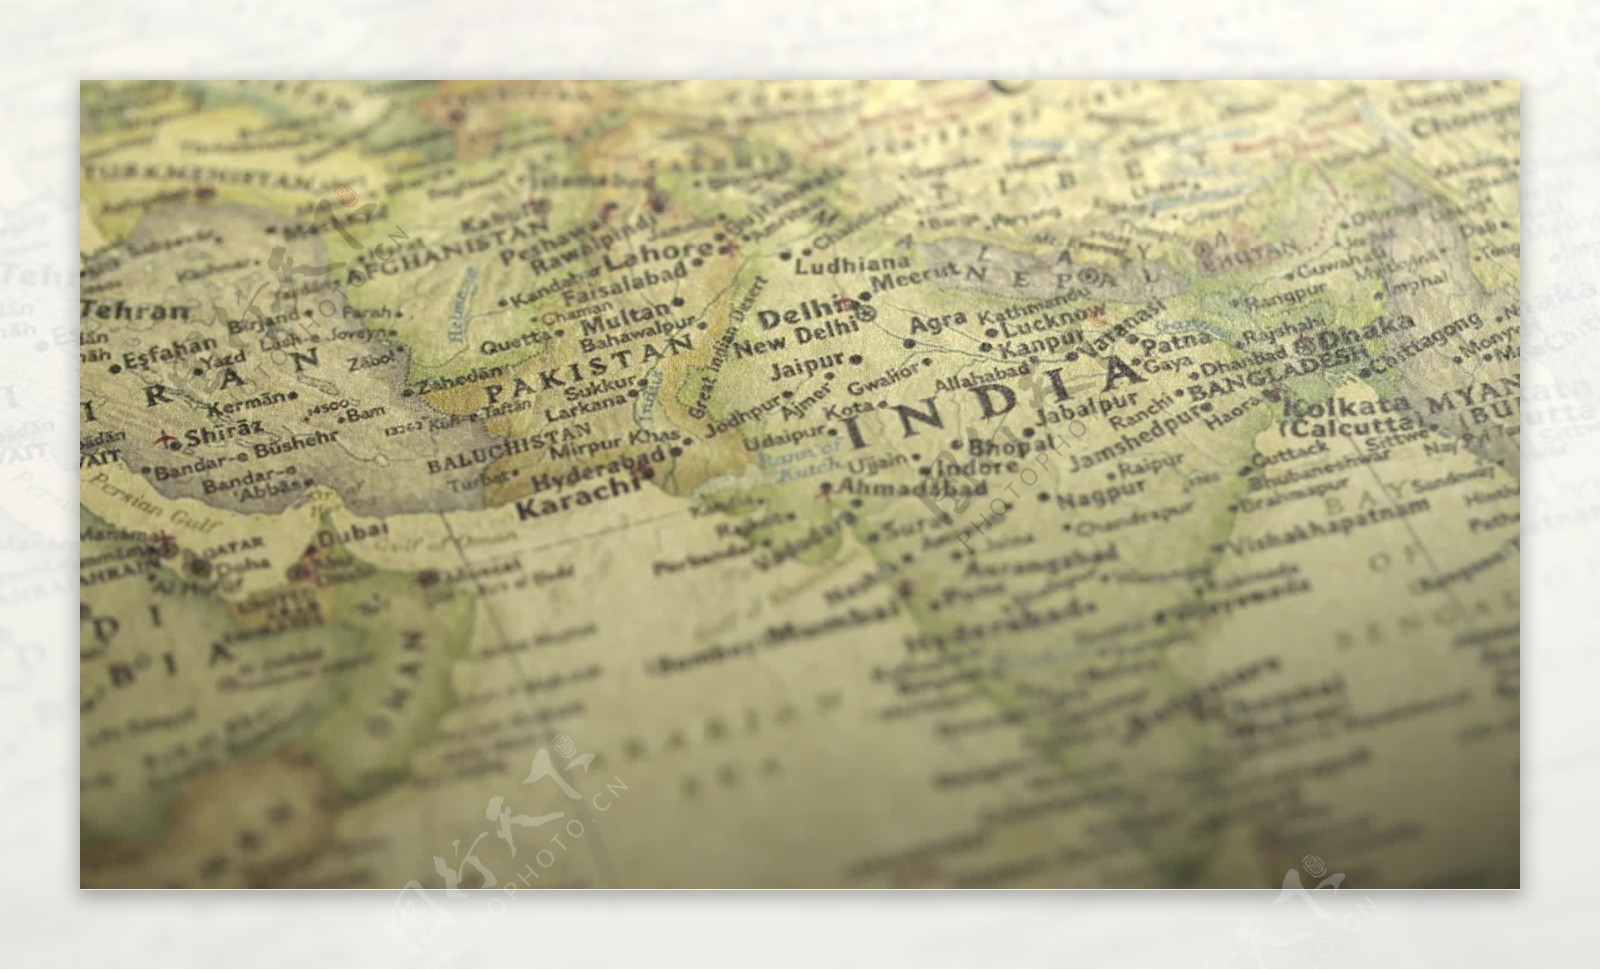 浏览一张横跨印度的老式地图